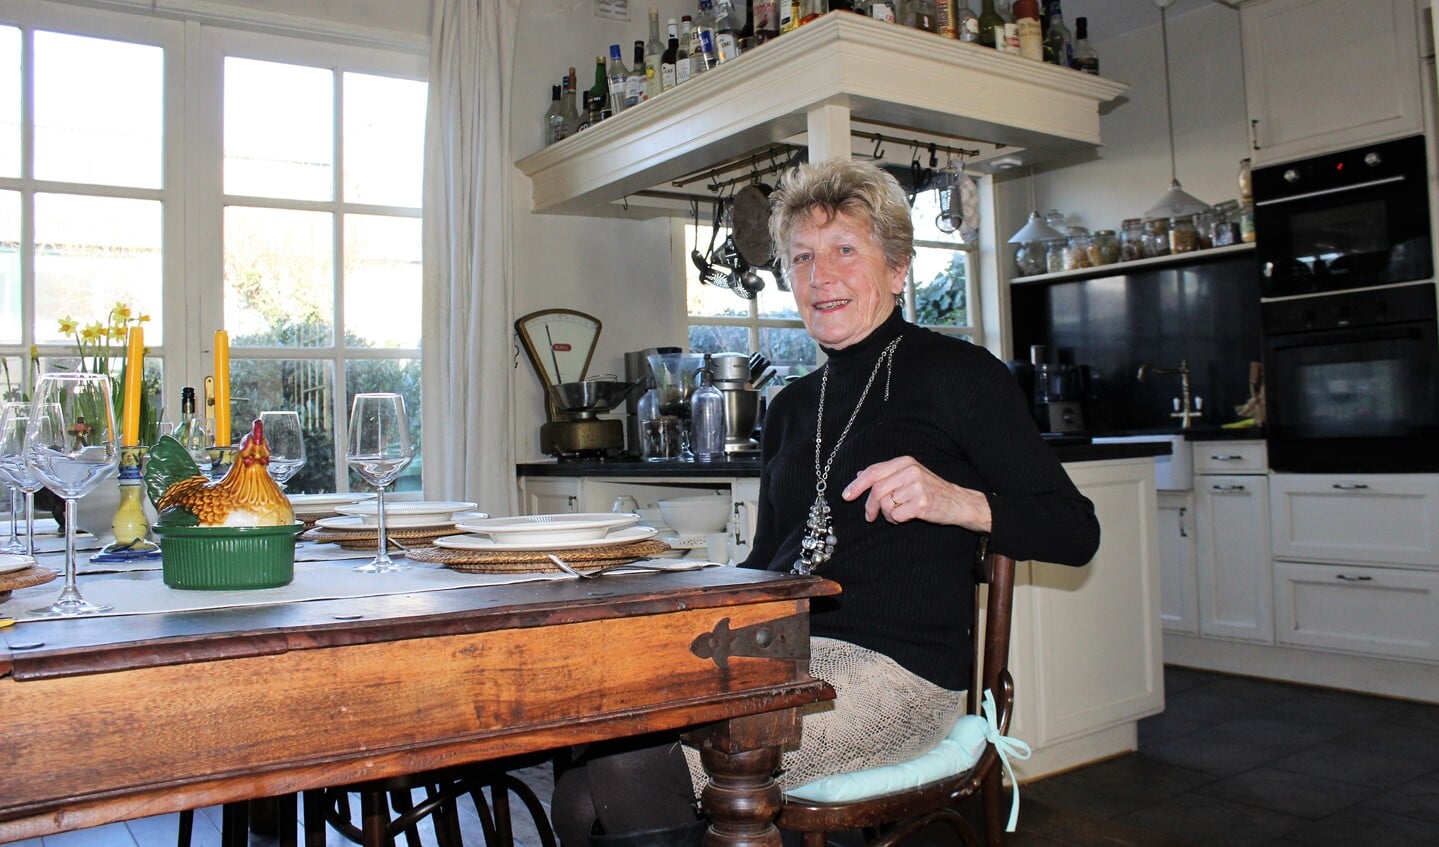 Maria Wildenberg aan tafel met op de achtergrond haar oud-Hollandse keukentje (foto: DJ).